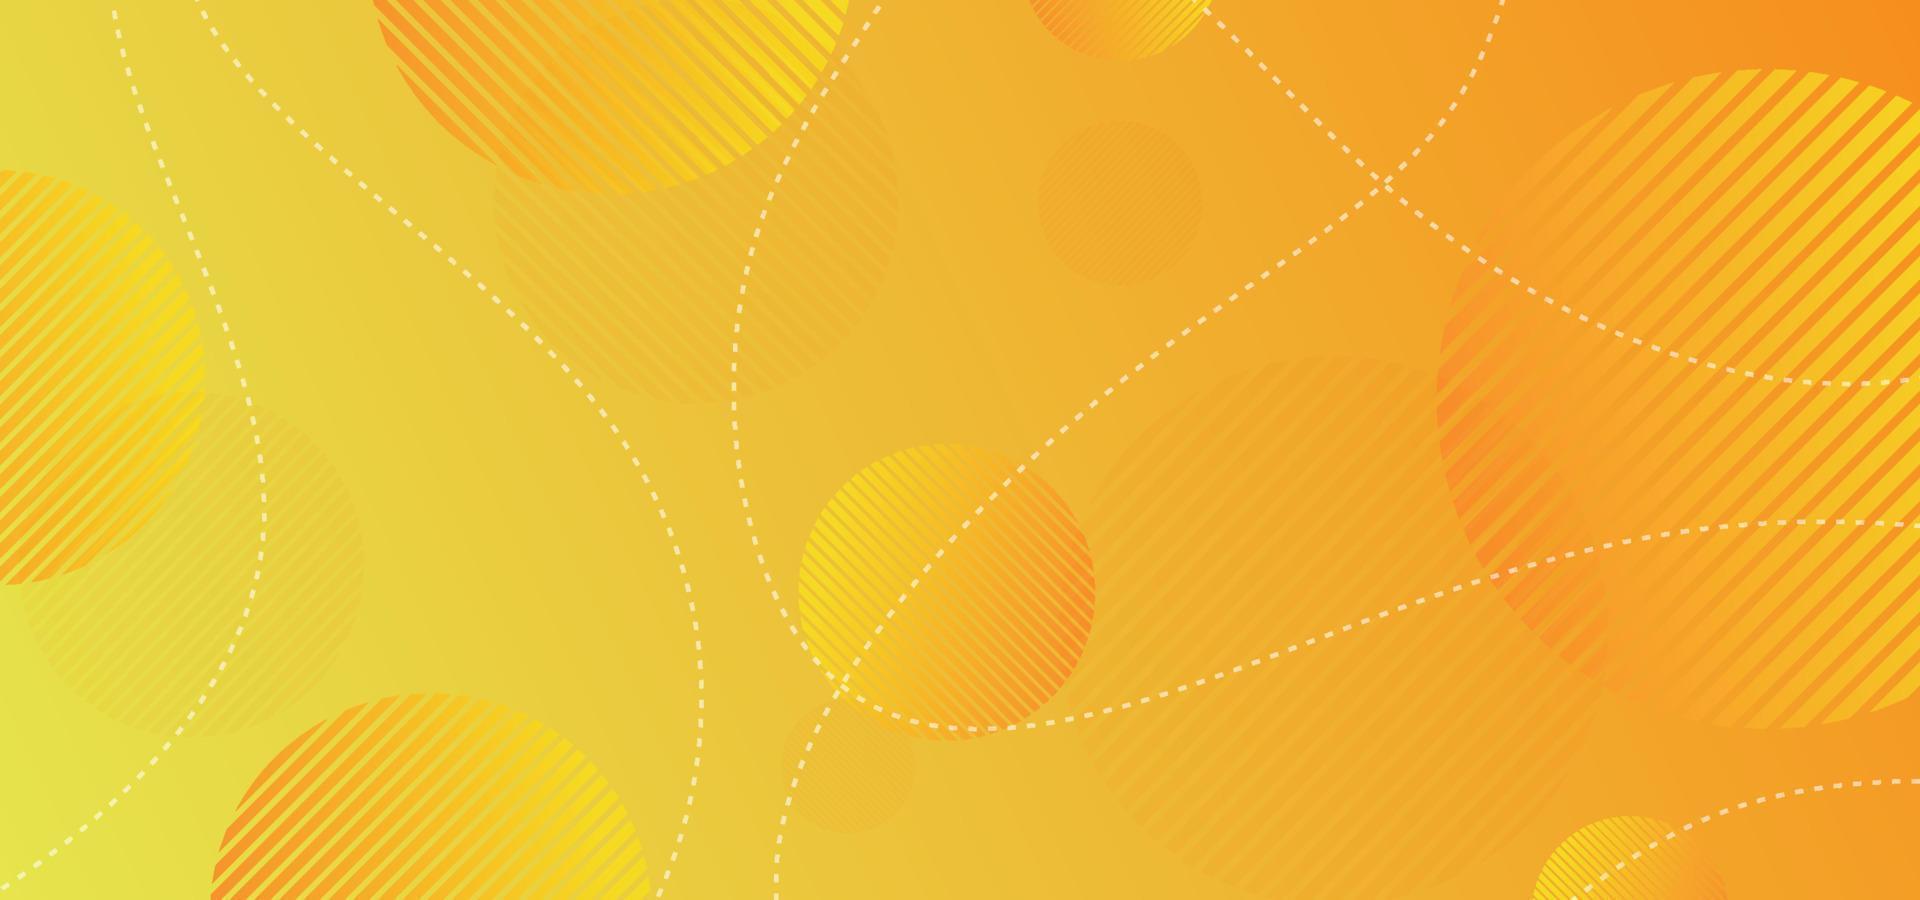 dynamische cirkel geometrische achtergrond met oranje en geel verloop. vector